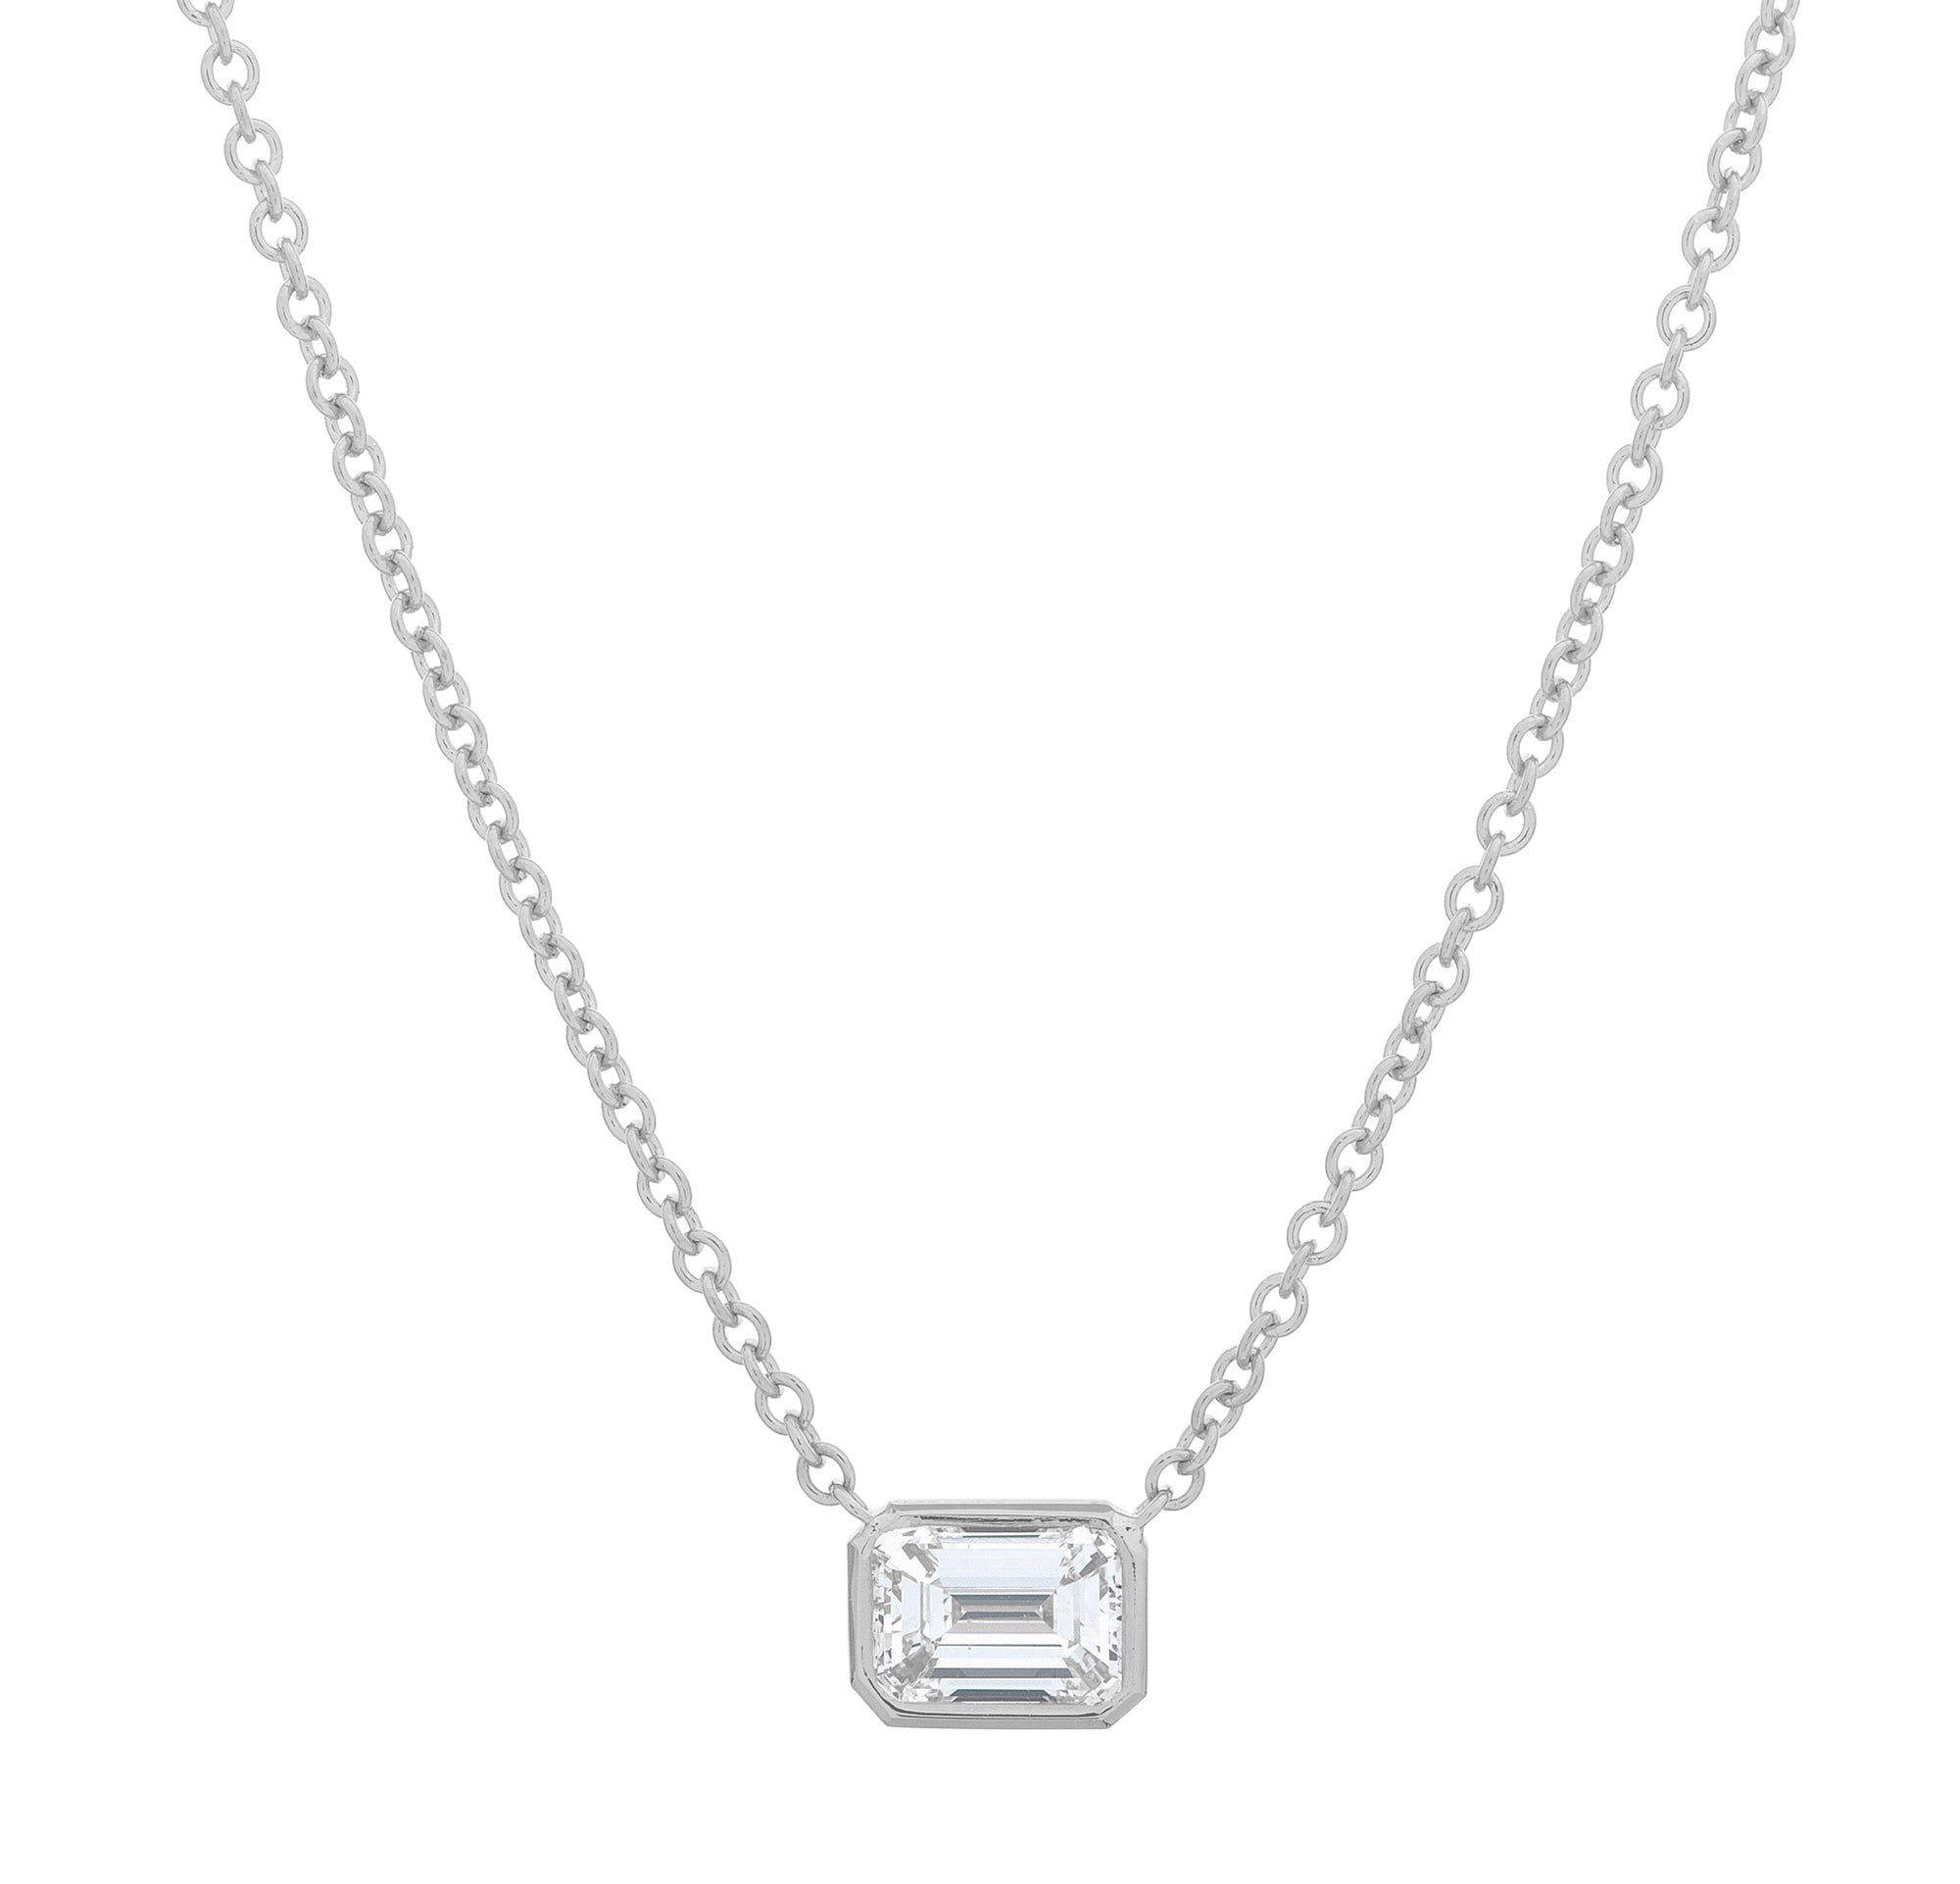 Emerald Cut Diamond Necklace | Wixon Jewelers